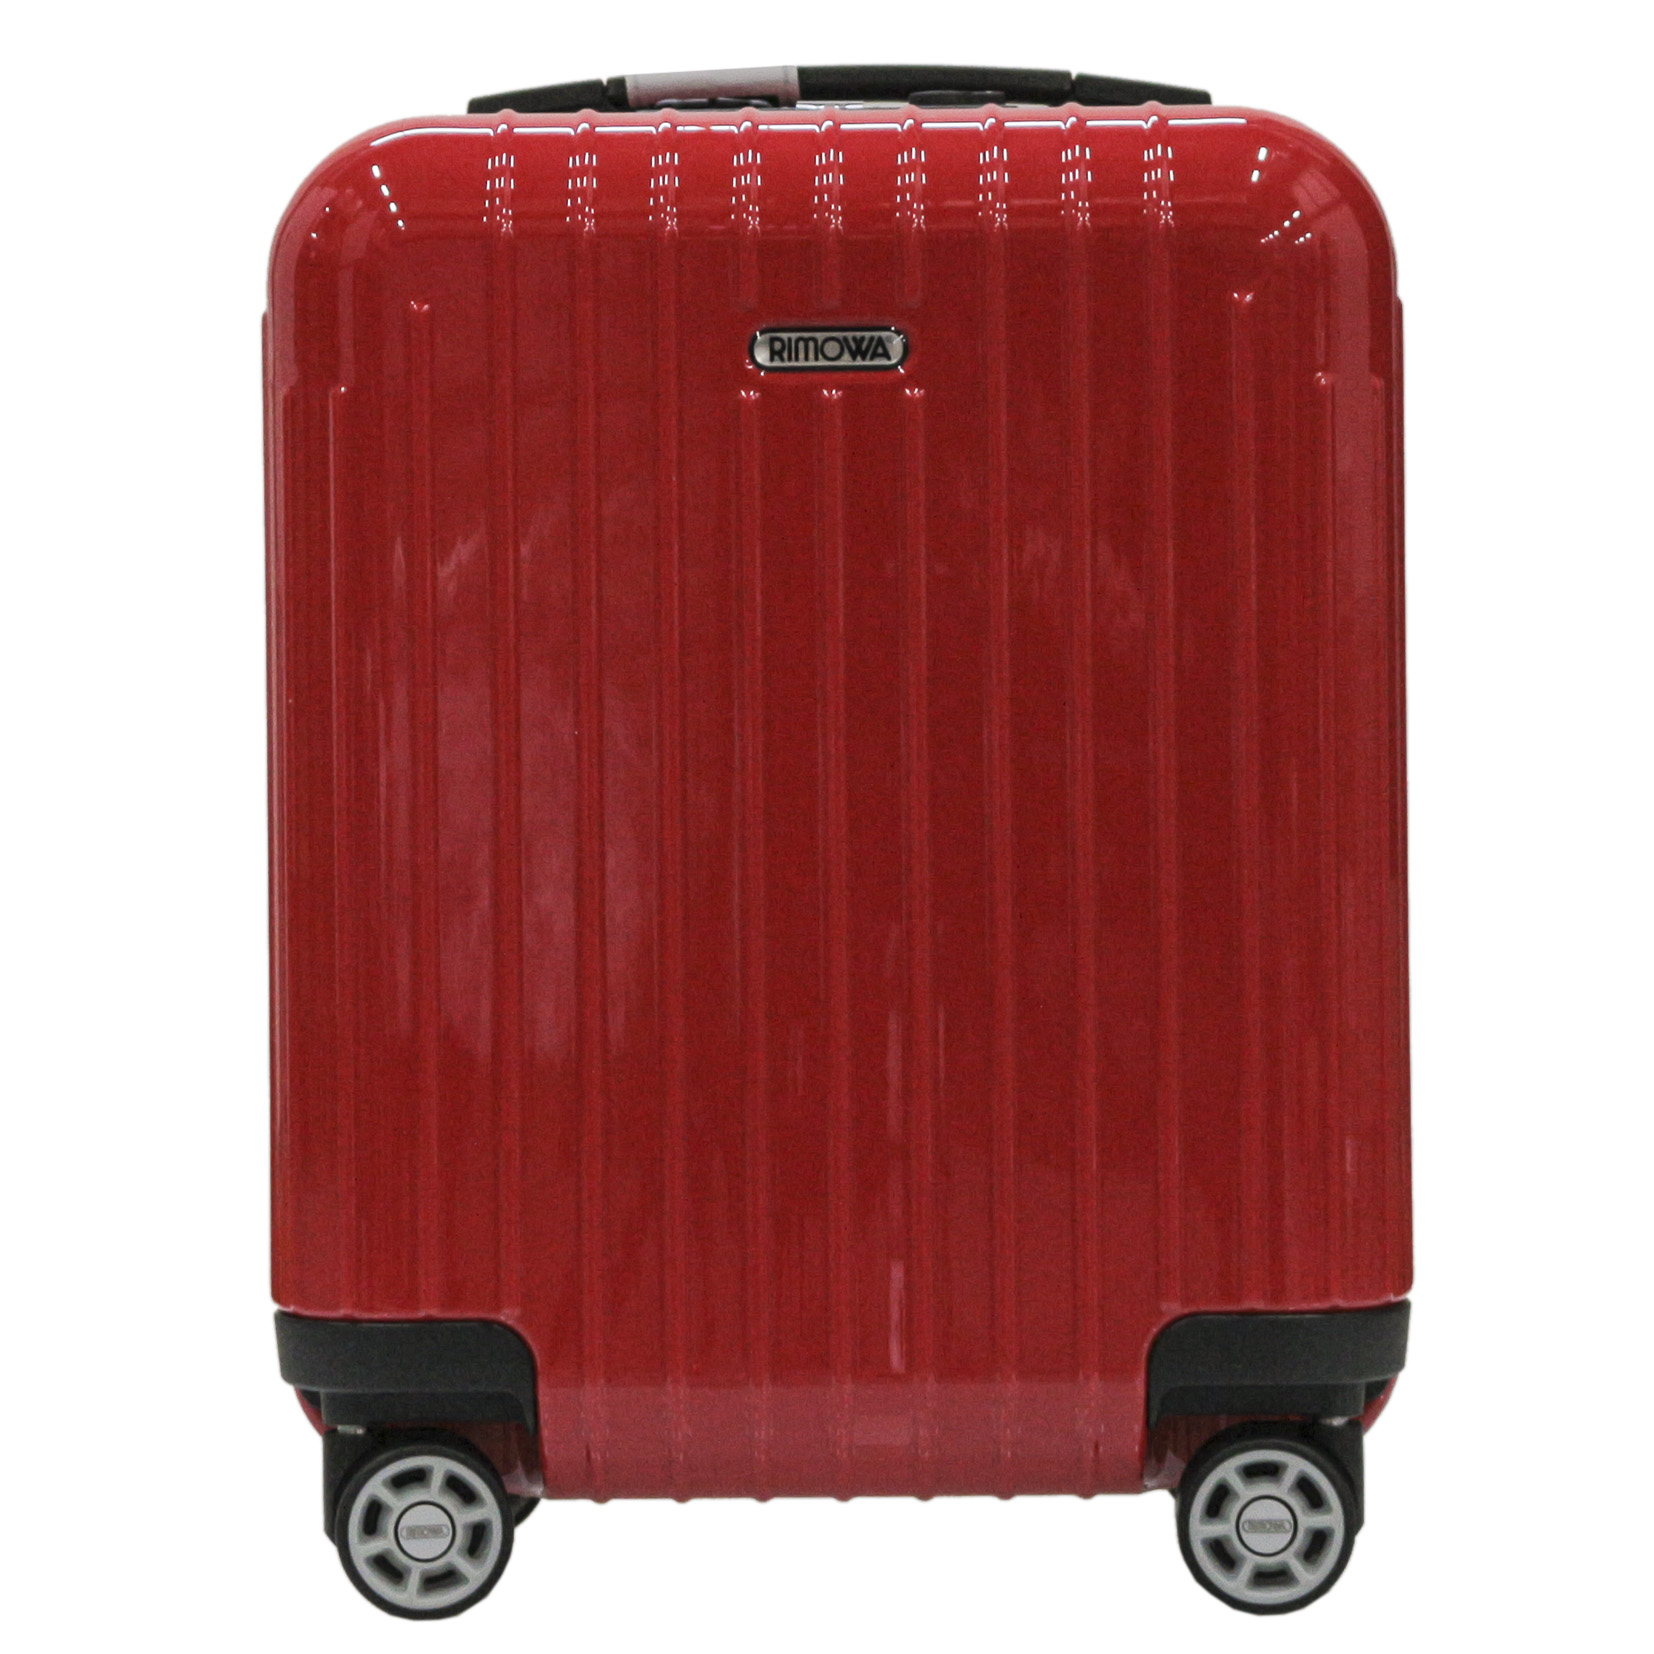 楽天市場】リモワ RIMOWA SALSA AIR スーツケース 22L 機内持ち込み 